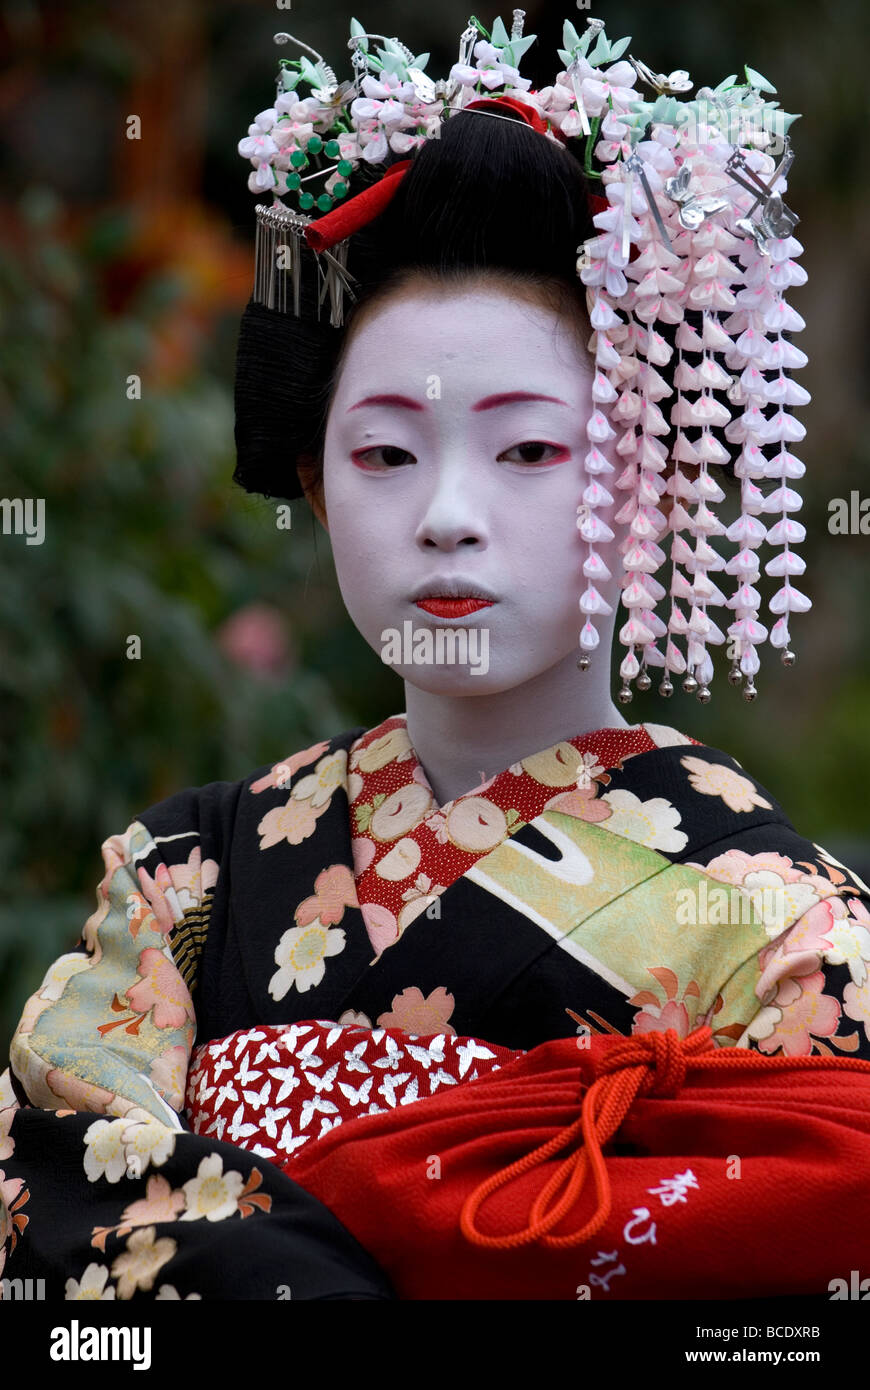 Un jeune apprenti geisha ou maiko avec printemps Kanzashi orné de décorations dans les cheveux pose pour une photo portrait Banque D'Images